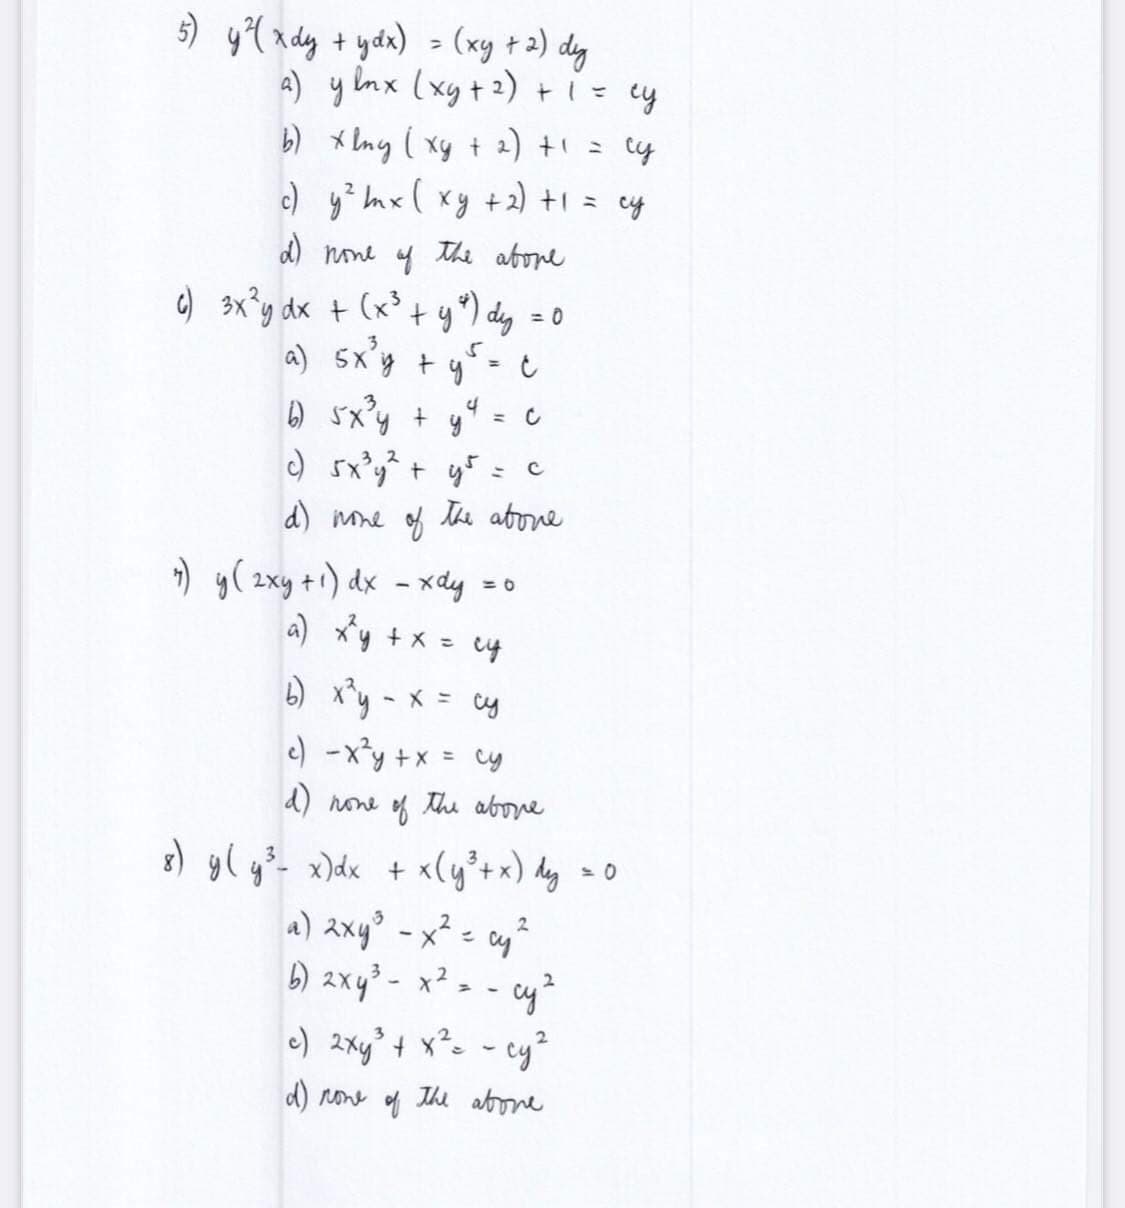 5) y ²¹(xdy + ydx) = (xy + 2) dy
a) y lnx (xy + ²) + 1 = cy
b) xlny ( xy + 2) + 1 =
су
c)
y ² mx ( xy + 2) + 1 = cy
d) none of the above
+ (x³ + y²) dy = 0
a) 5x²y + y² = c
4
b) 5x³y +
=
c) sxyết gỗ t
с
d) none of the above
c) 3x²y dx
7) y (2xy + ¹) dx - xdy = 0
a) x²y + x = cy
b) x²y = x = cy
c) -x²y + x = cy
d) none of the above
8) y(y³- x) dx + x(y ³ + x) dy
2
a) 2xy³ - x² = cy ²
2
b) 2xy³ - x² =
cy ²
c) 2xy²³ + x² = - cy²
d) none
The abone